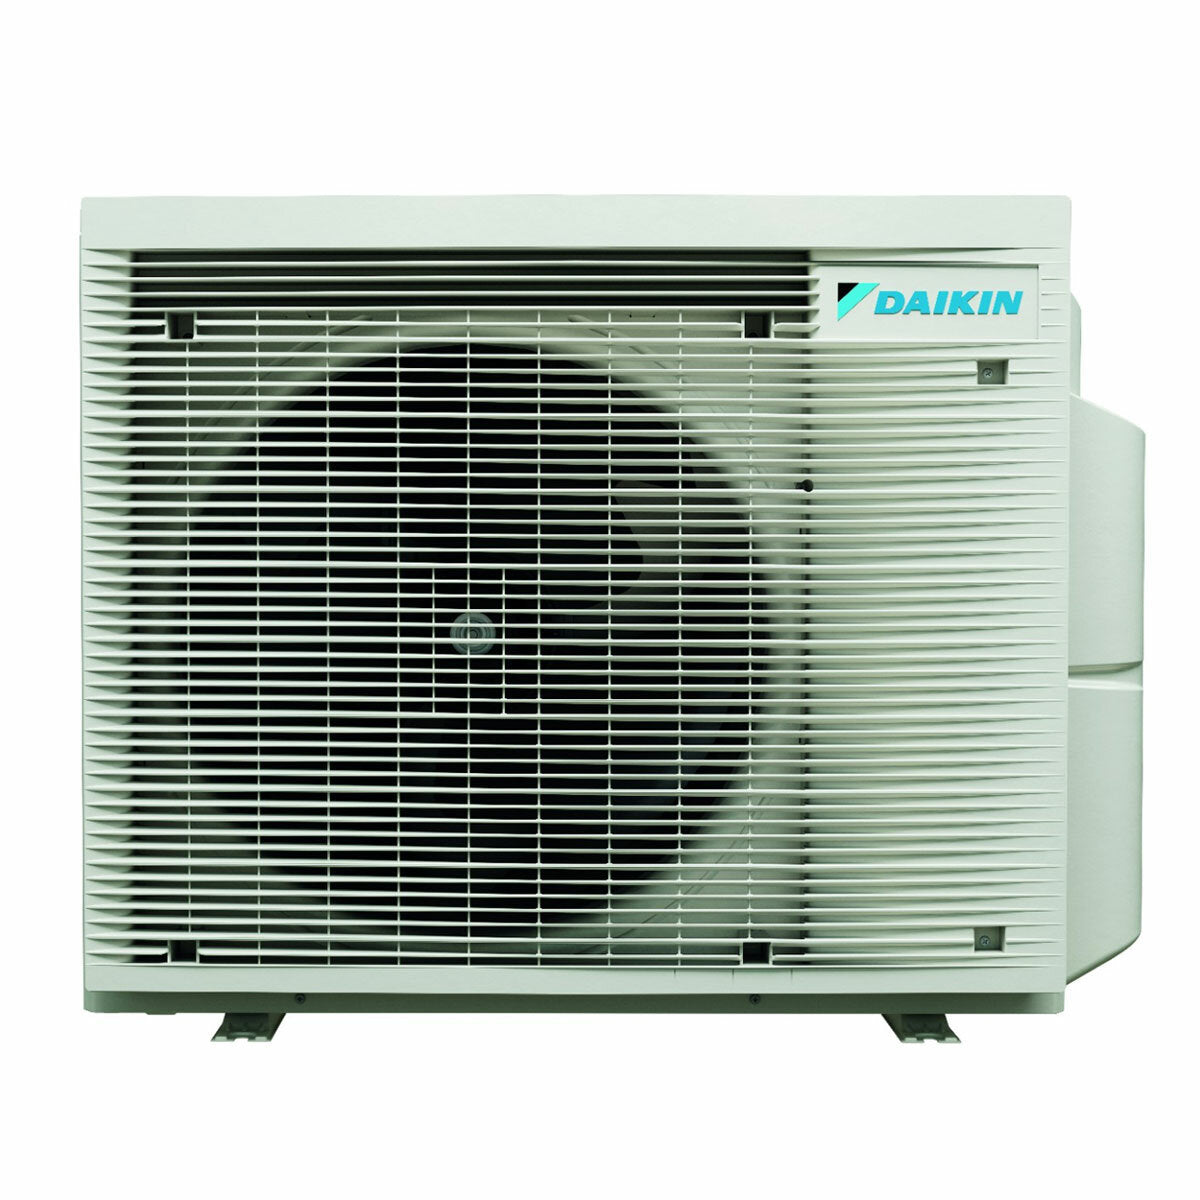 Système de climatisation et d'eau chaude sanitaire double split Daikin Multi+ - Unités intérieures Perfera All Seasons 9000+12000 BTU - Réservoir 120 l